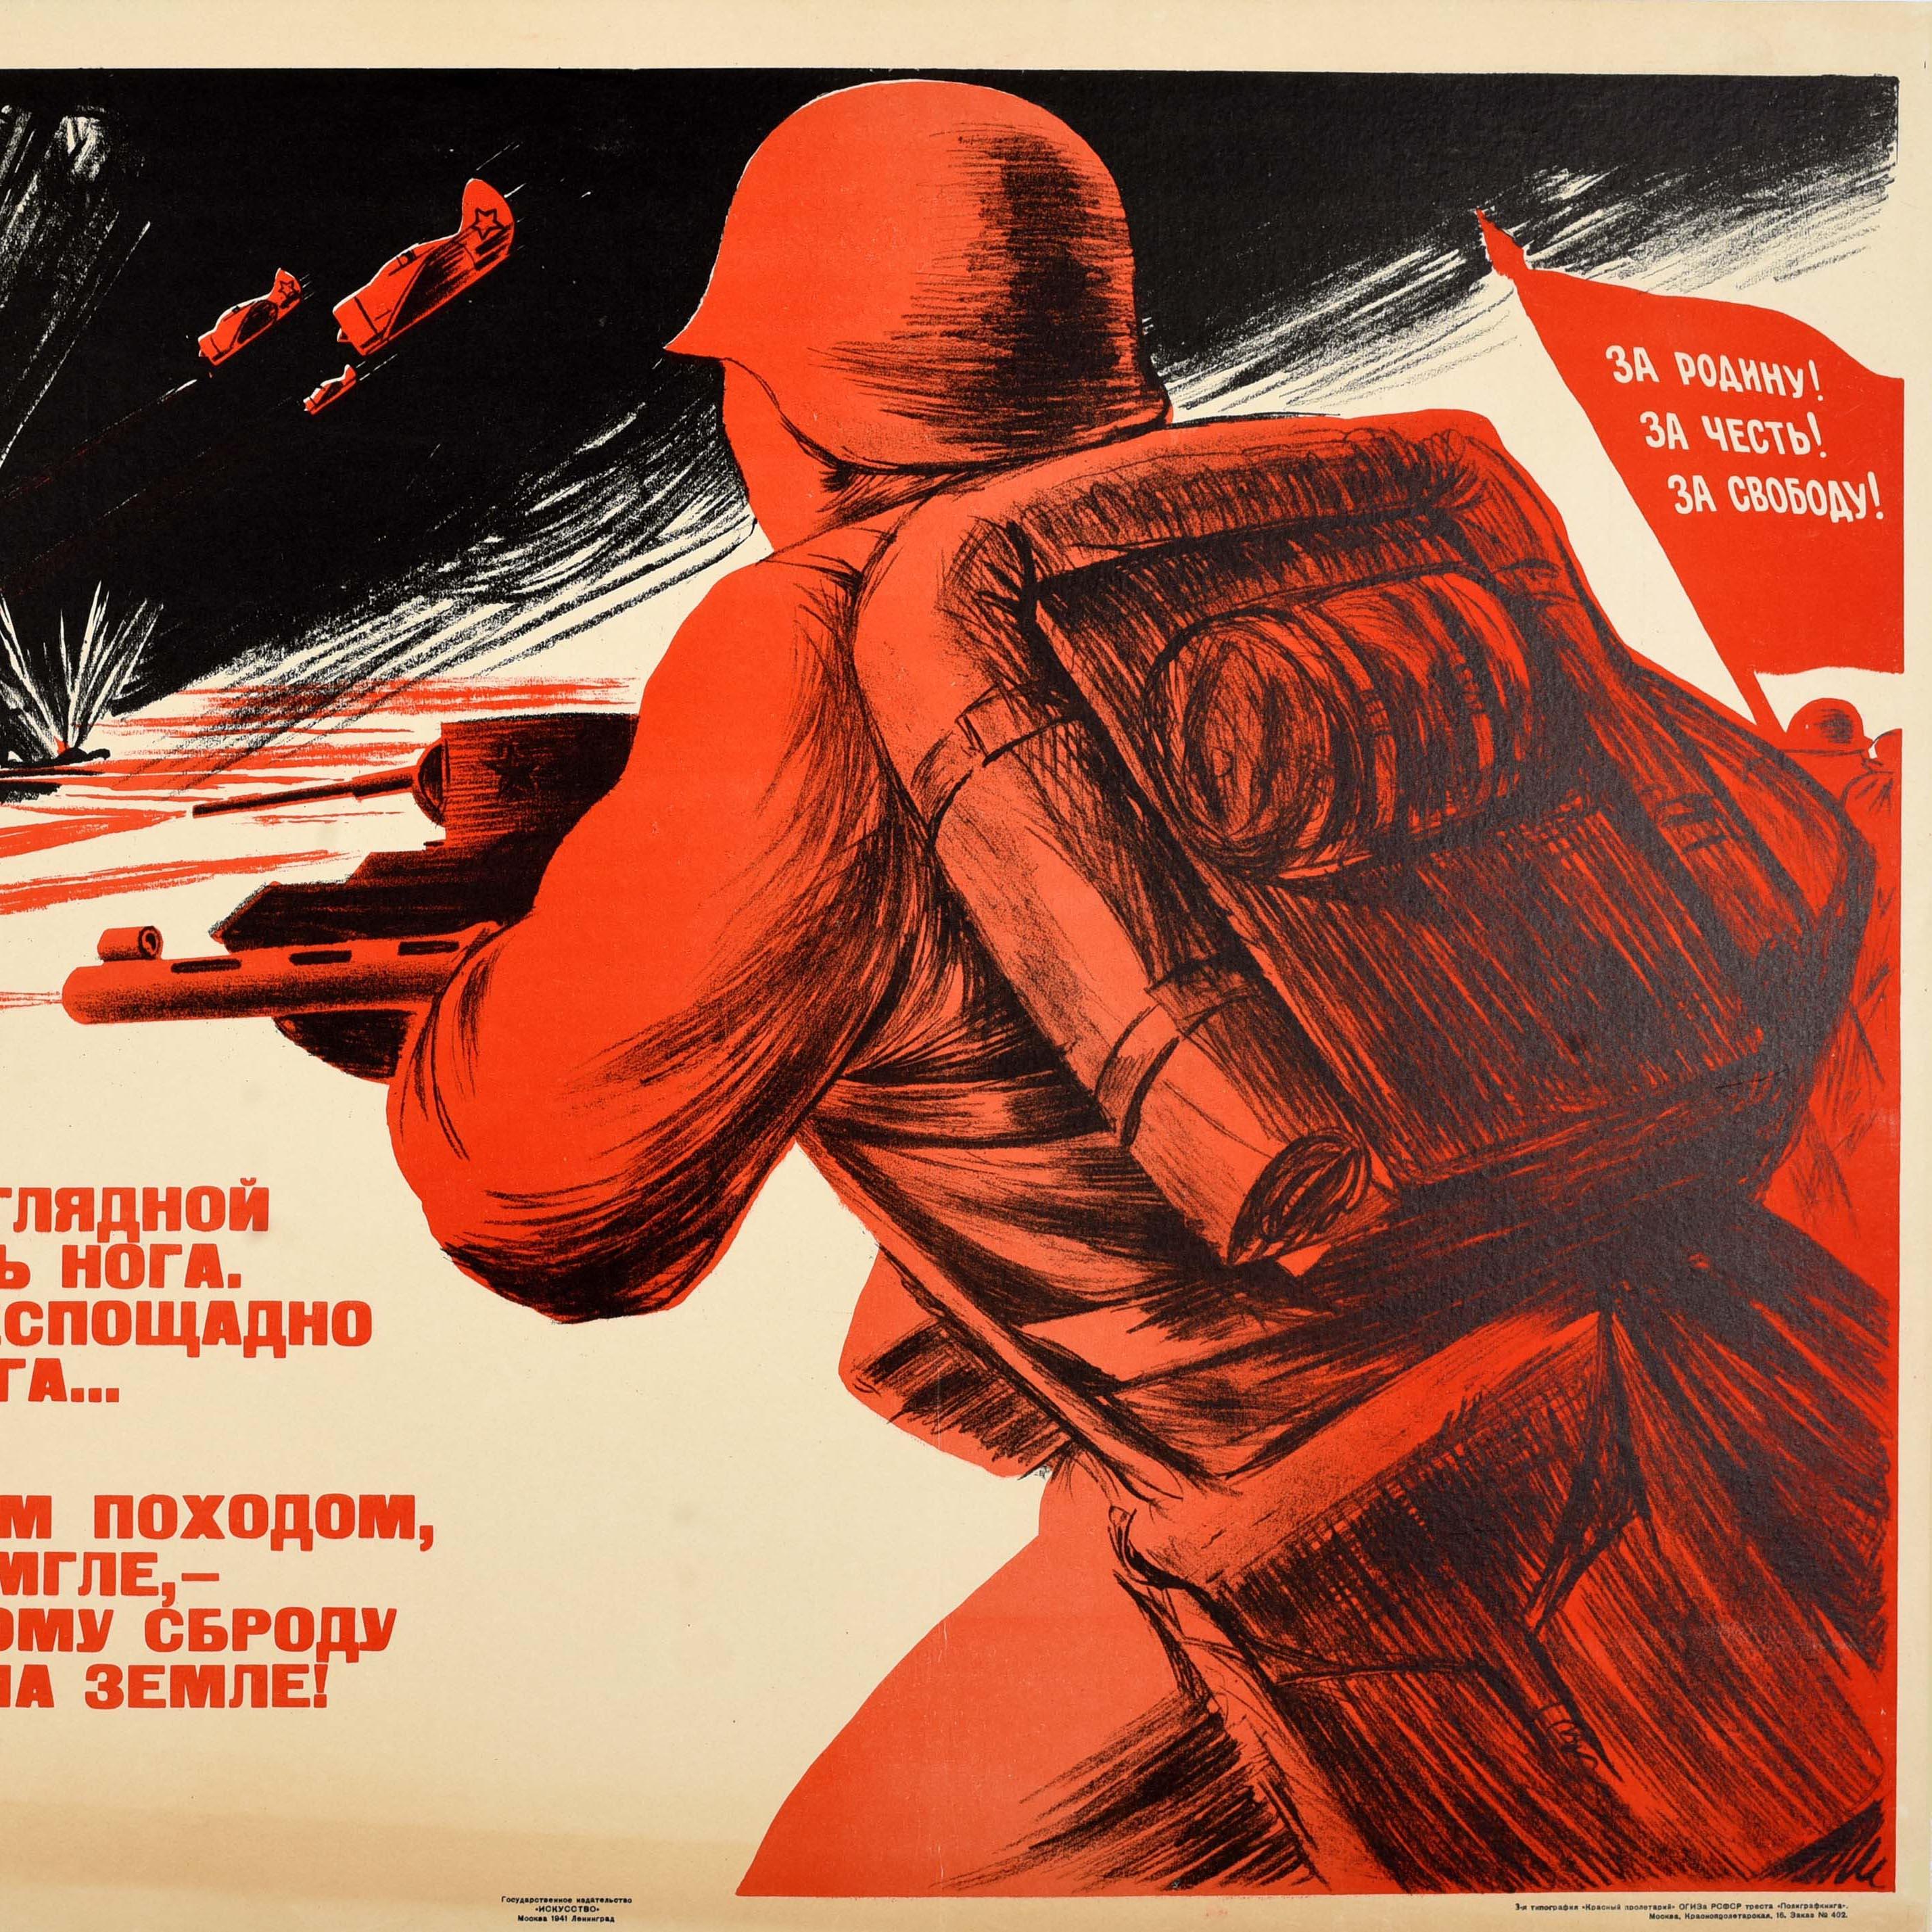 Originales sowjetisches Propagandaplakat aus dem Zweiten Weltkrieg - Unser Land wurde vom unendlichen Feind heimgesucht Wir werden die dunklen Kräfte des Feindes gnadenlos zerschlagen ... Lasst uns eine schreckliche Kampagne führen und ein Licht in